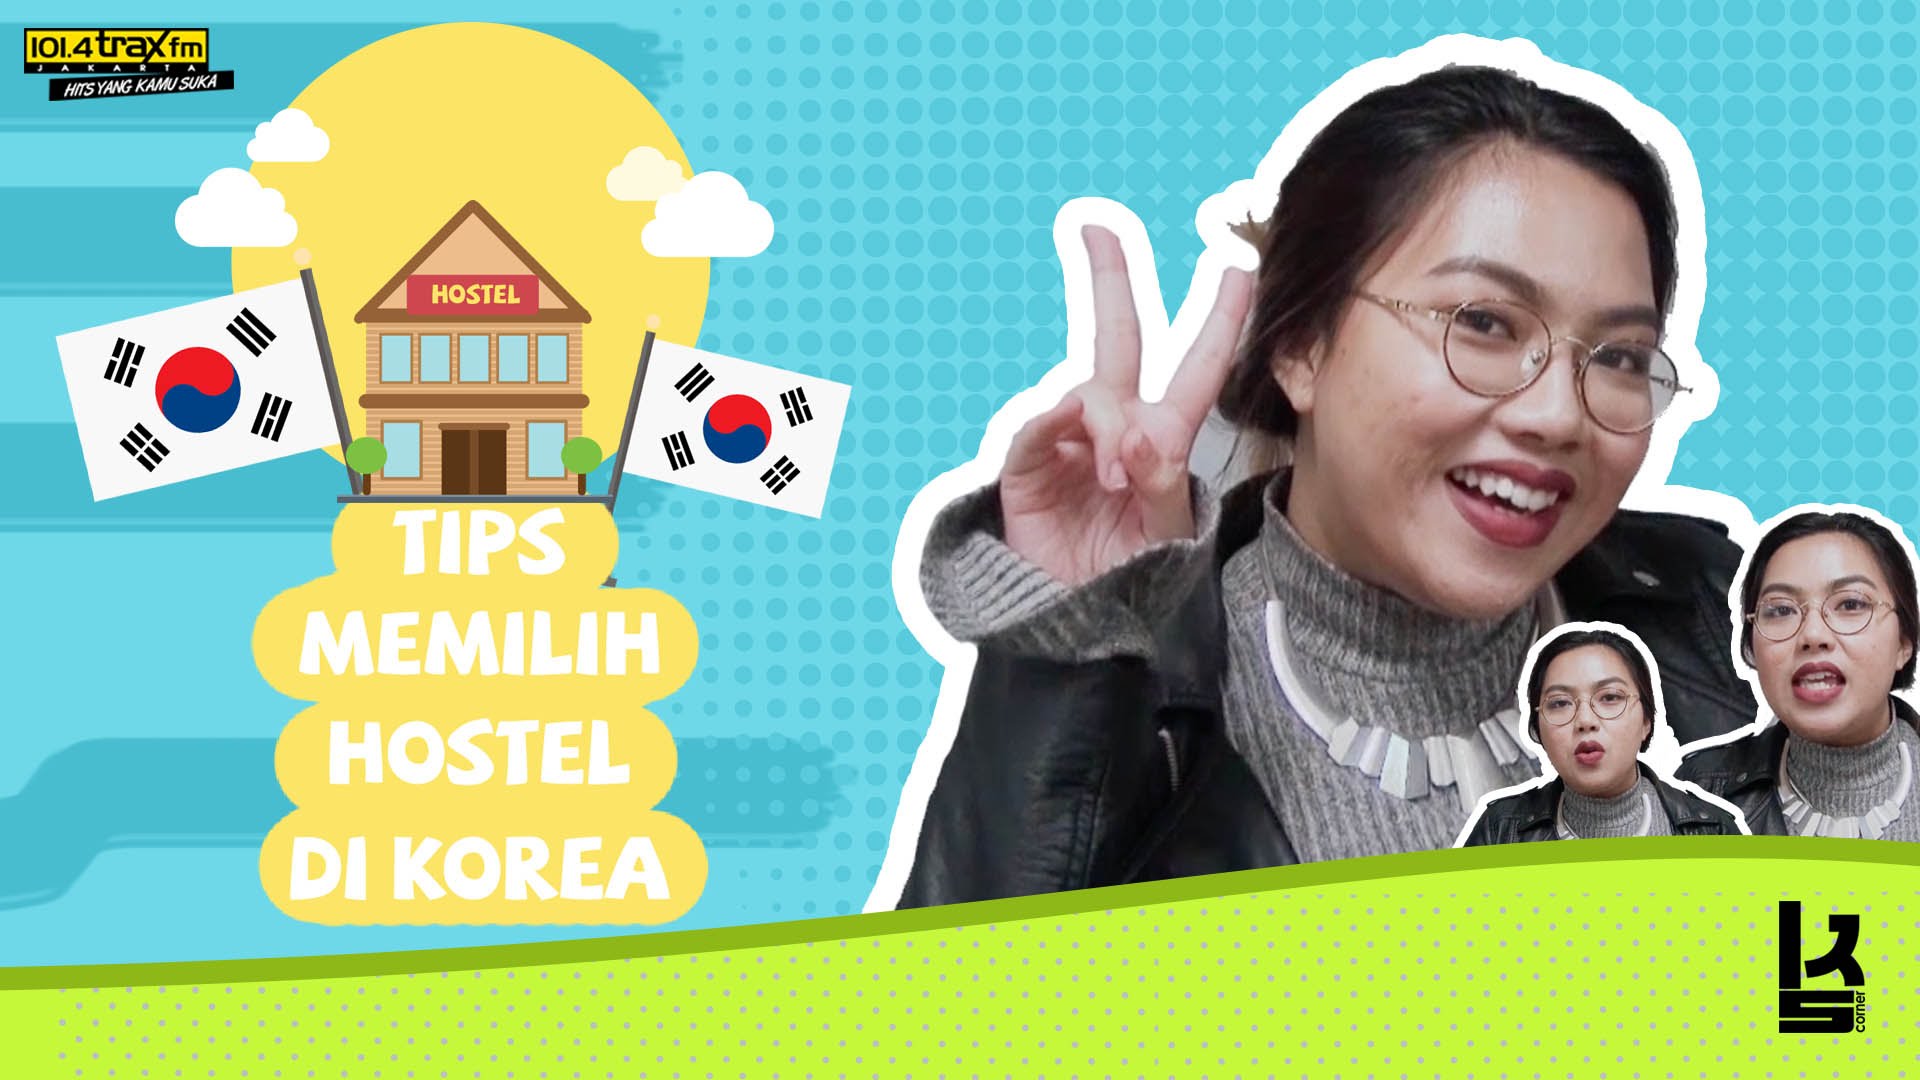 Tips memilih hostel di Korea #KsCorner